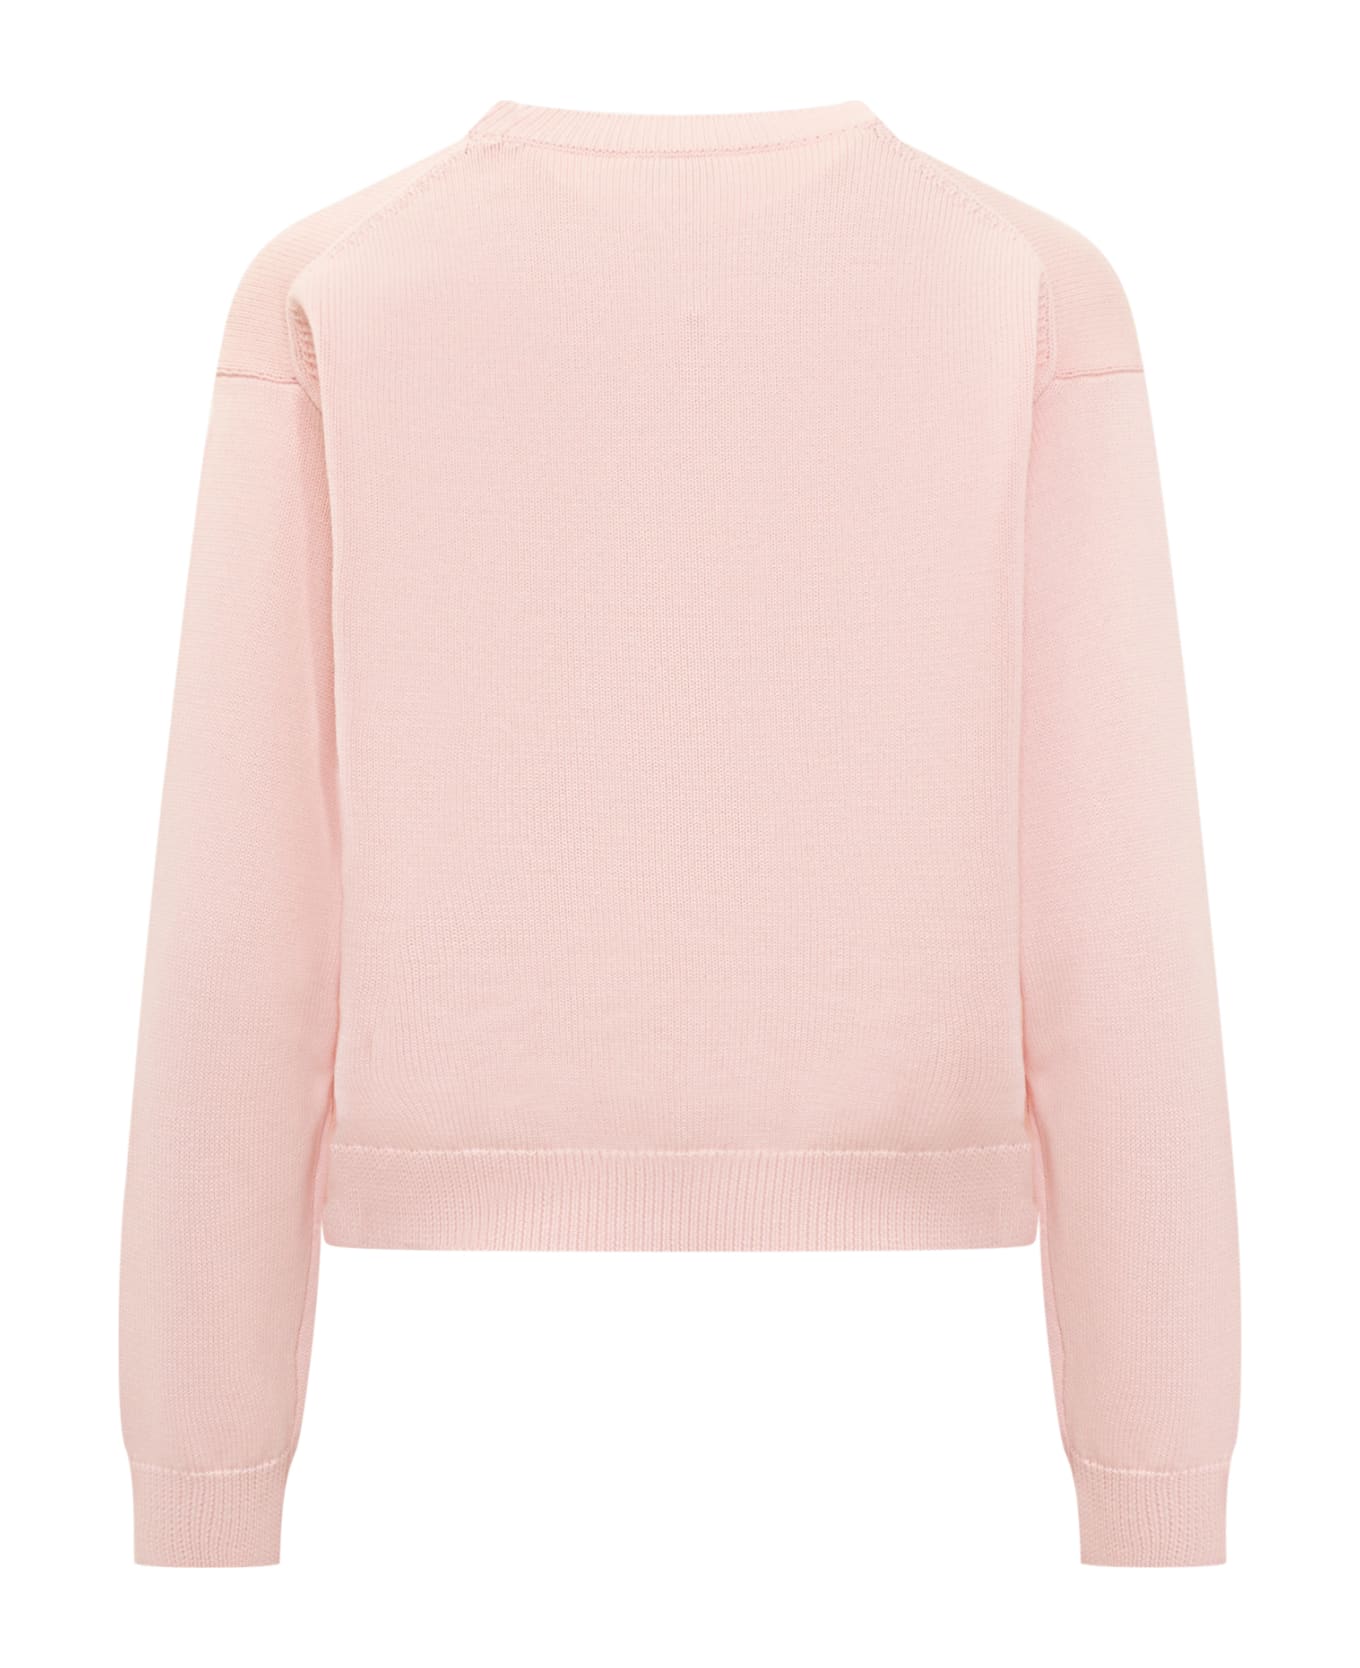 Kenzo Boke Flower Sweater - Faded pink フリース